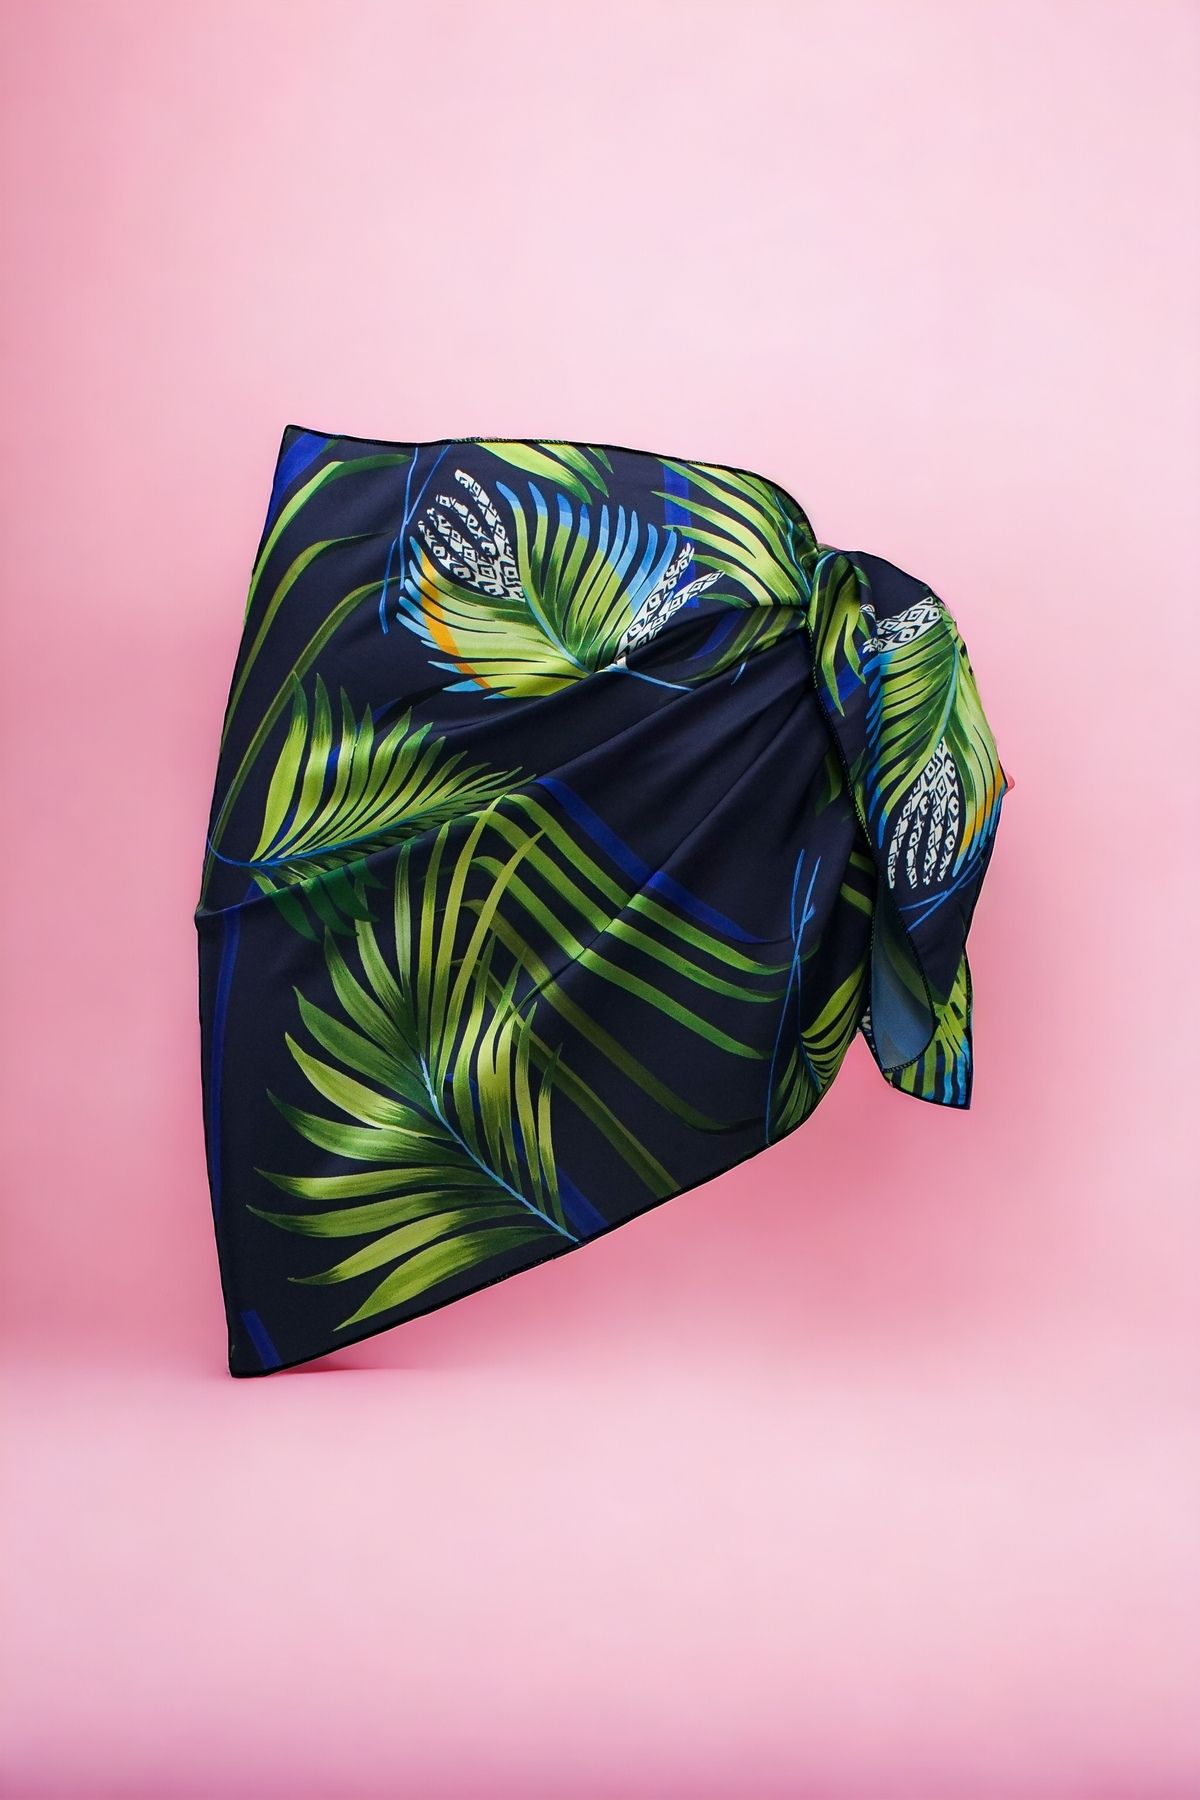 pistore Lacivert Tropikal Palmiye Desenli Kısa Pareo Saten Kadın Plaj Elbisesi Yeni Sezon